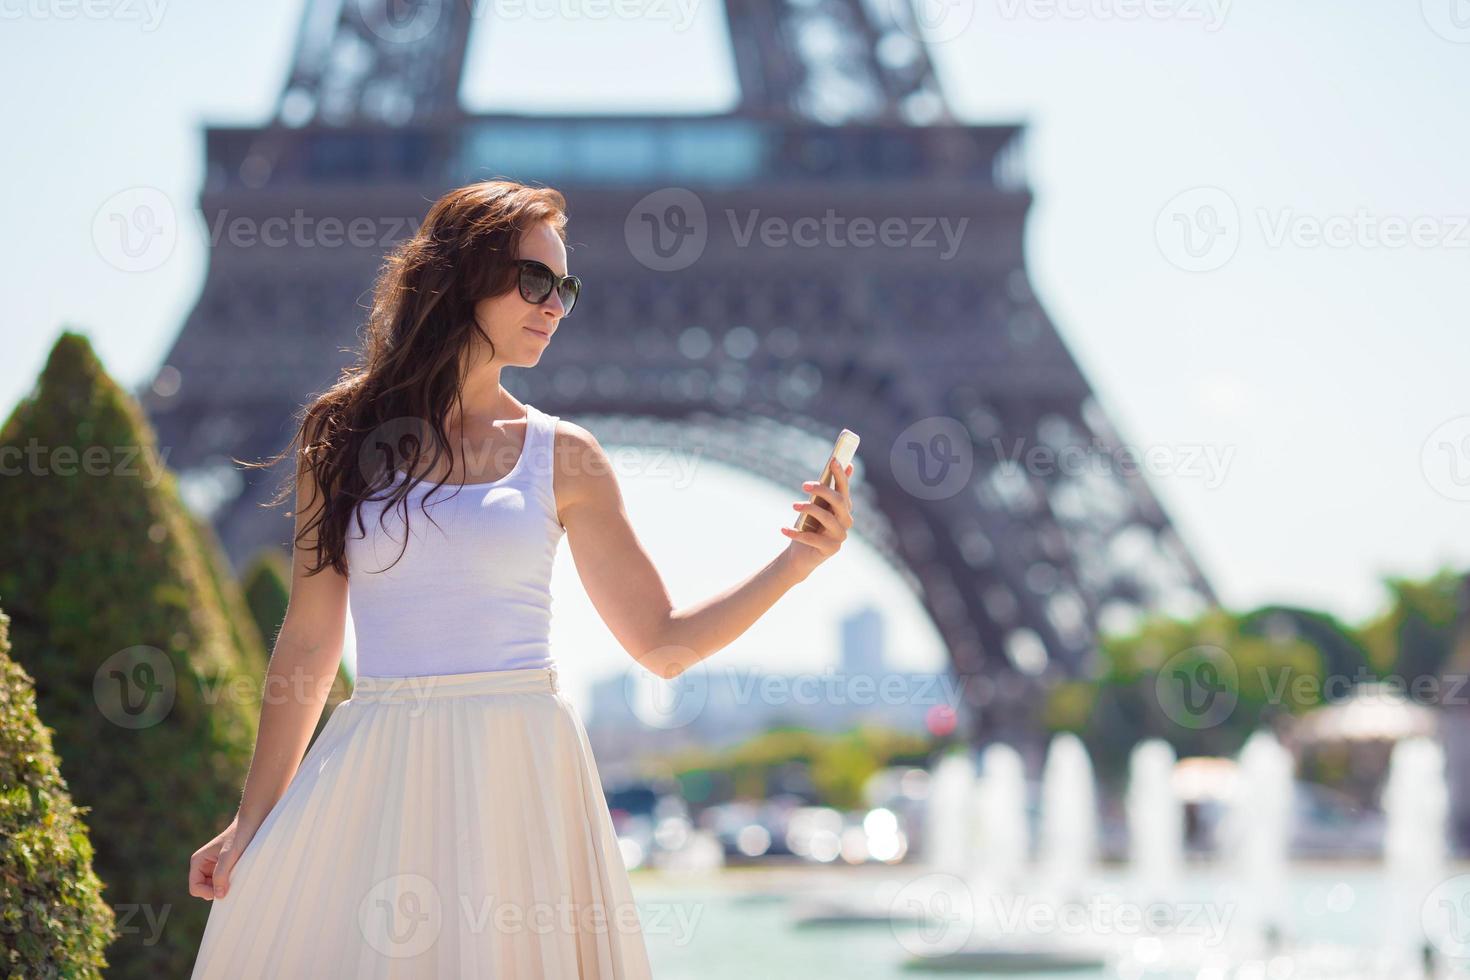 mooi vrouw in Parijs achtergrond de eiffel toren gedurende zomer vakantie foto